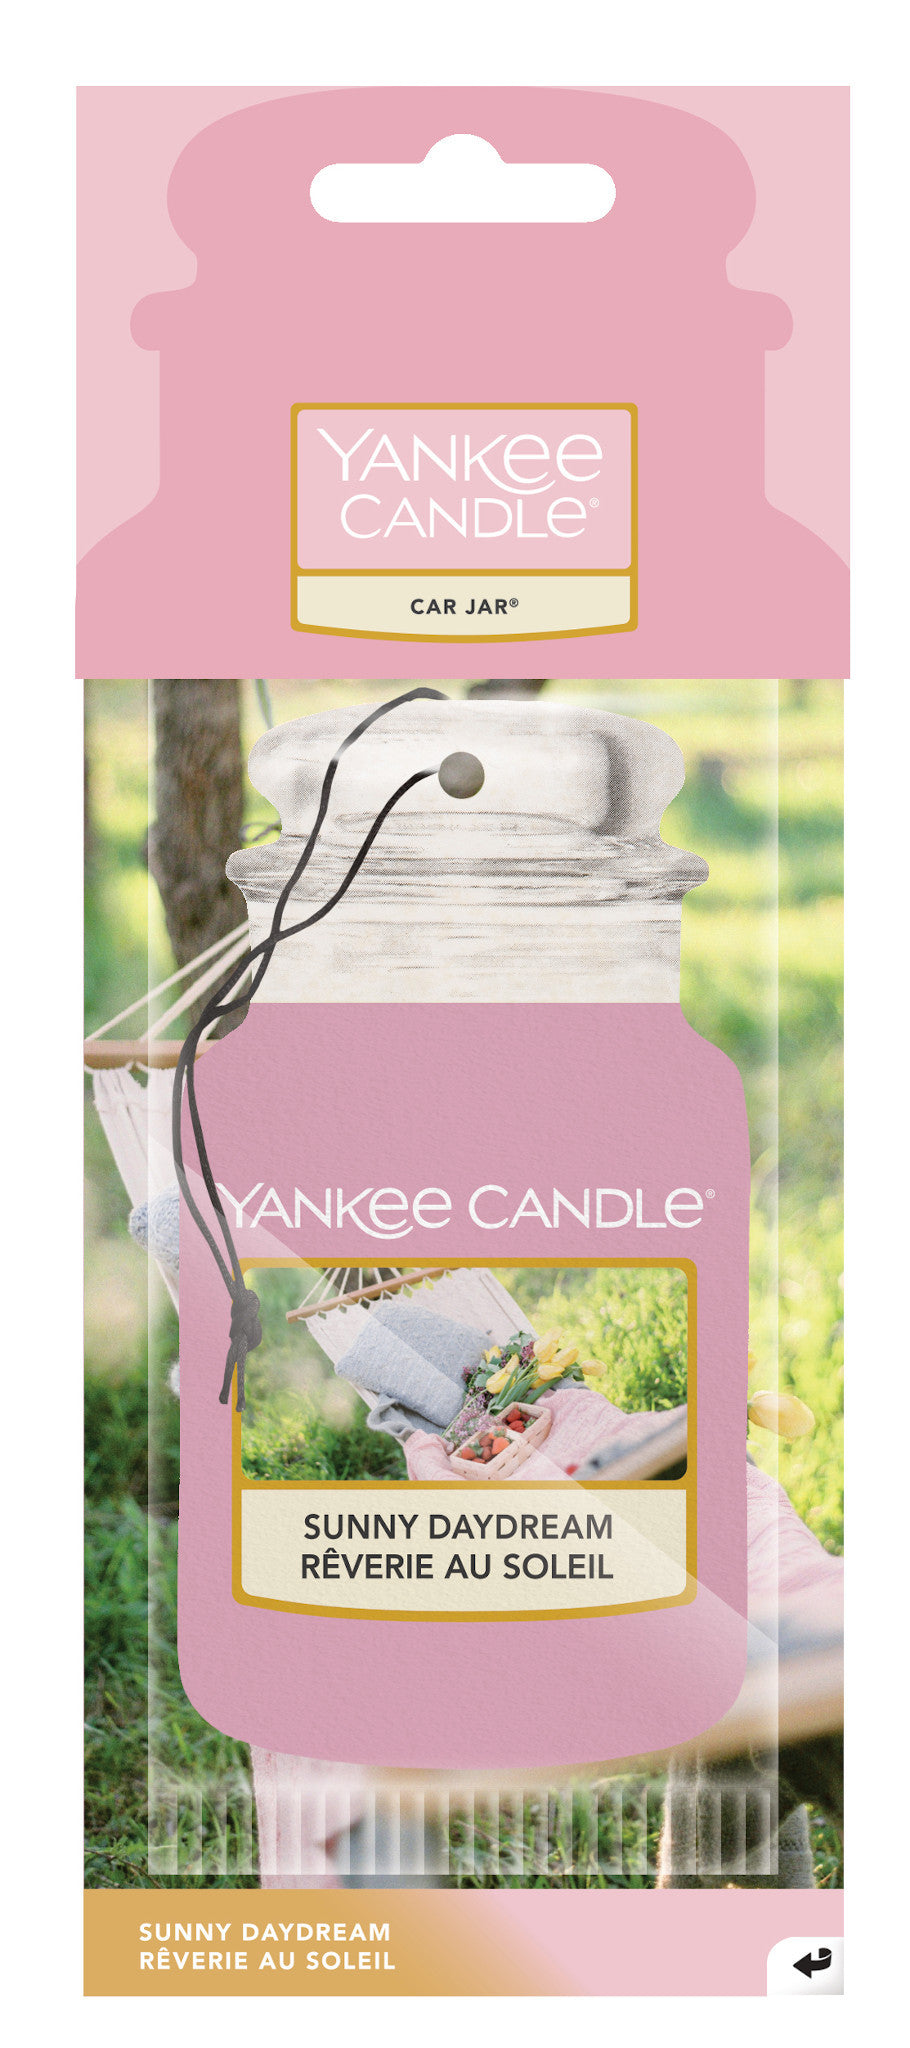 Yankee Candle - Car Jar Sunny Daydream